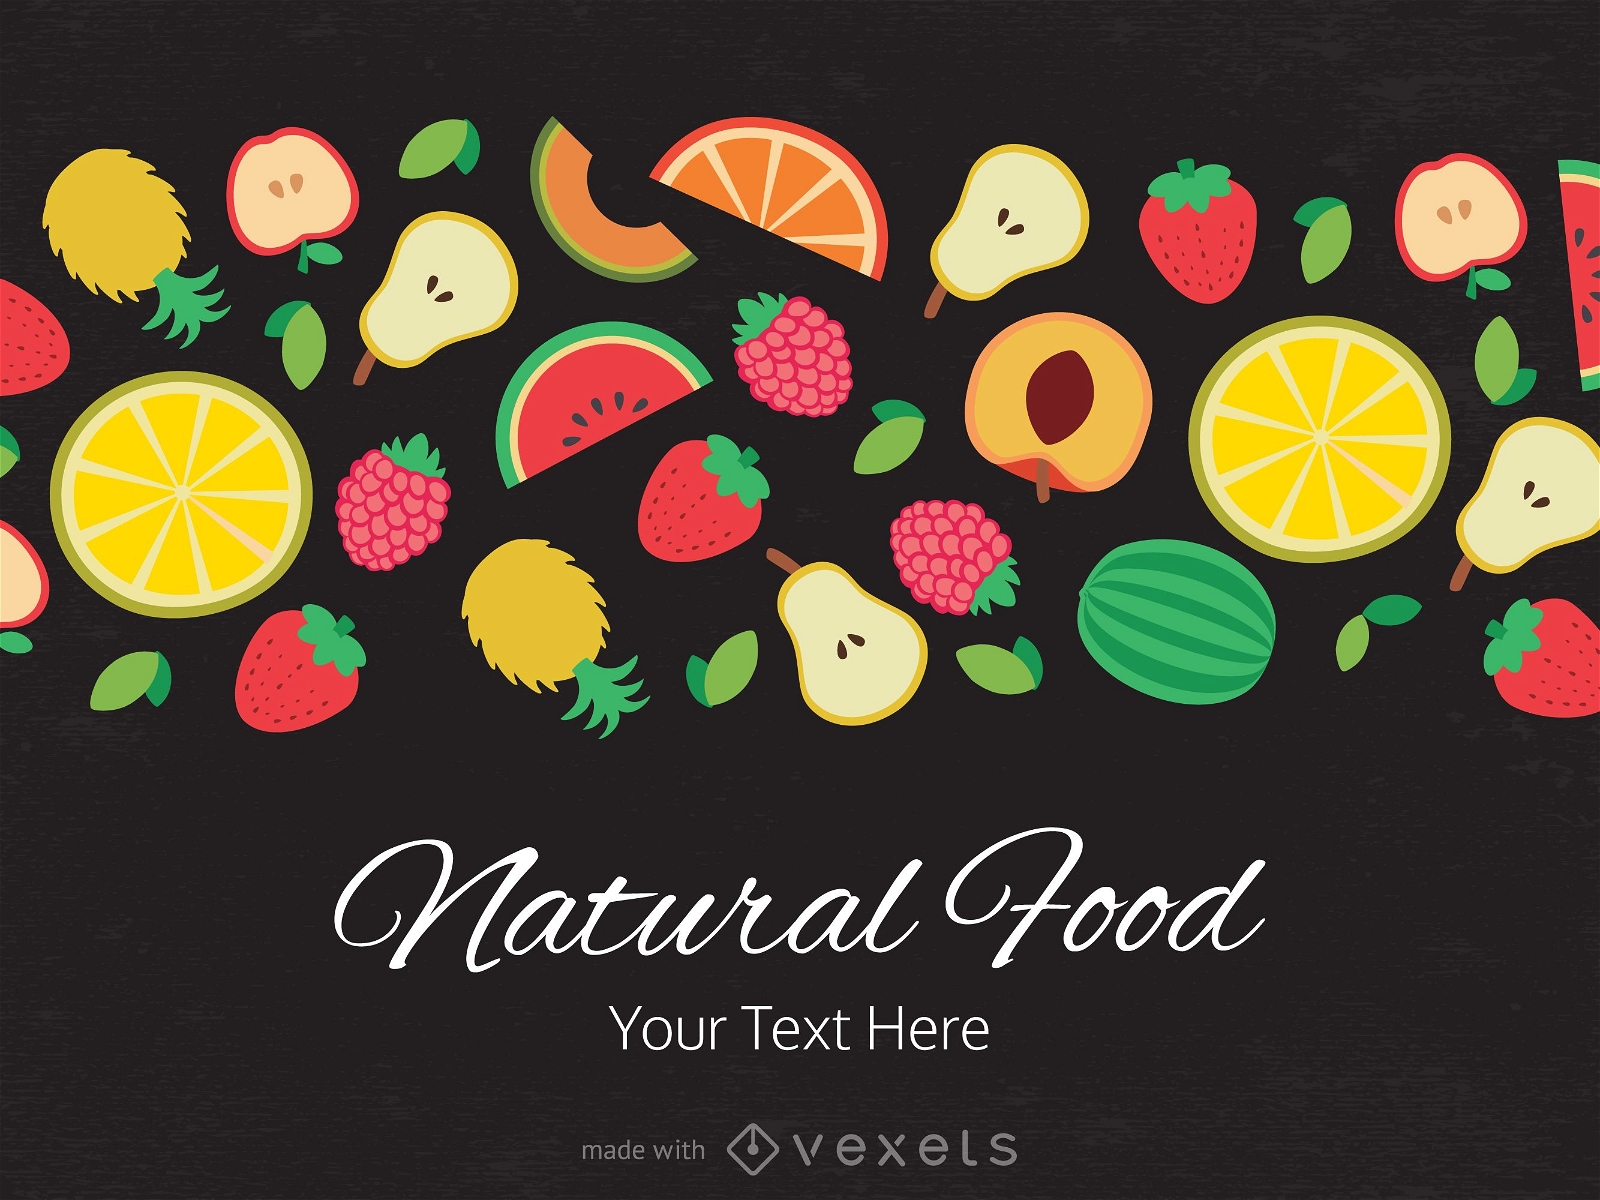 Flat fruits and vegetables illustration design